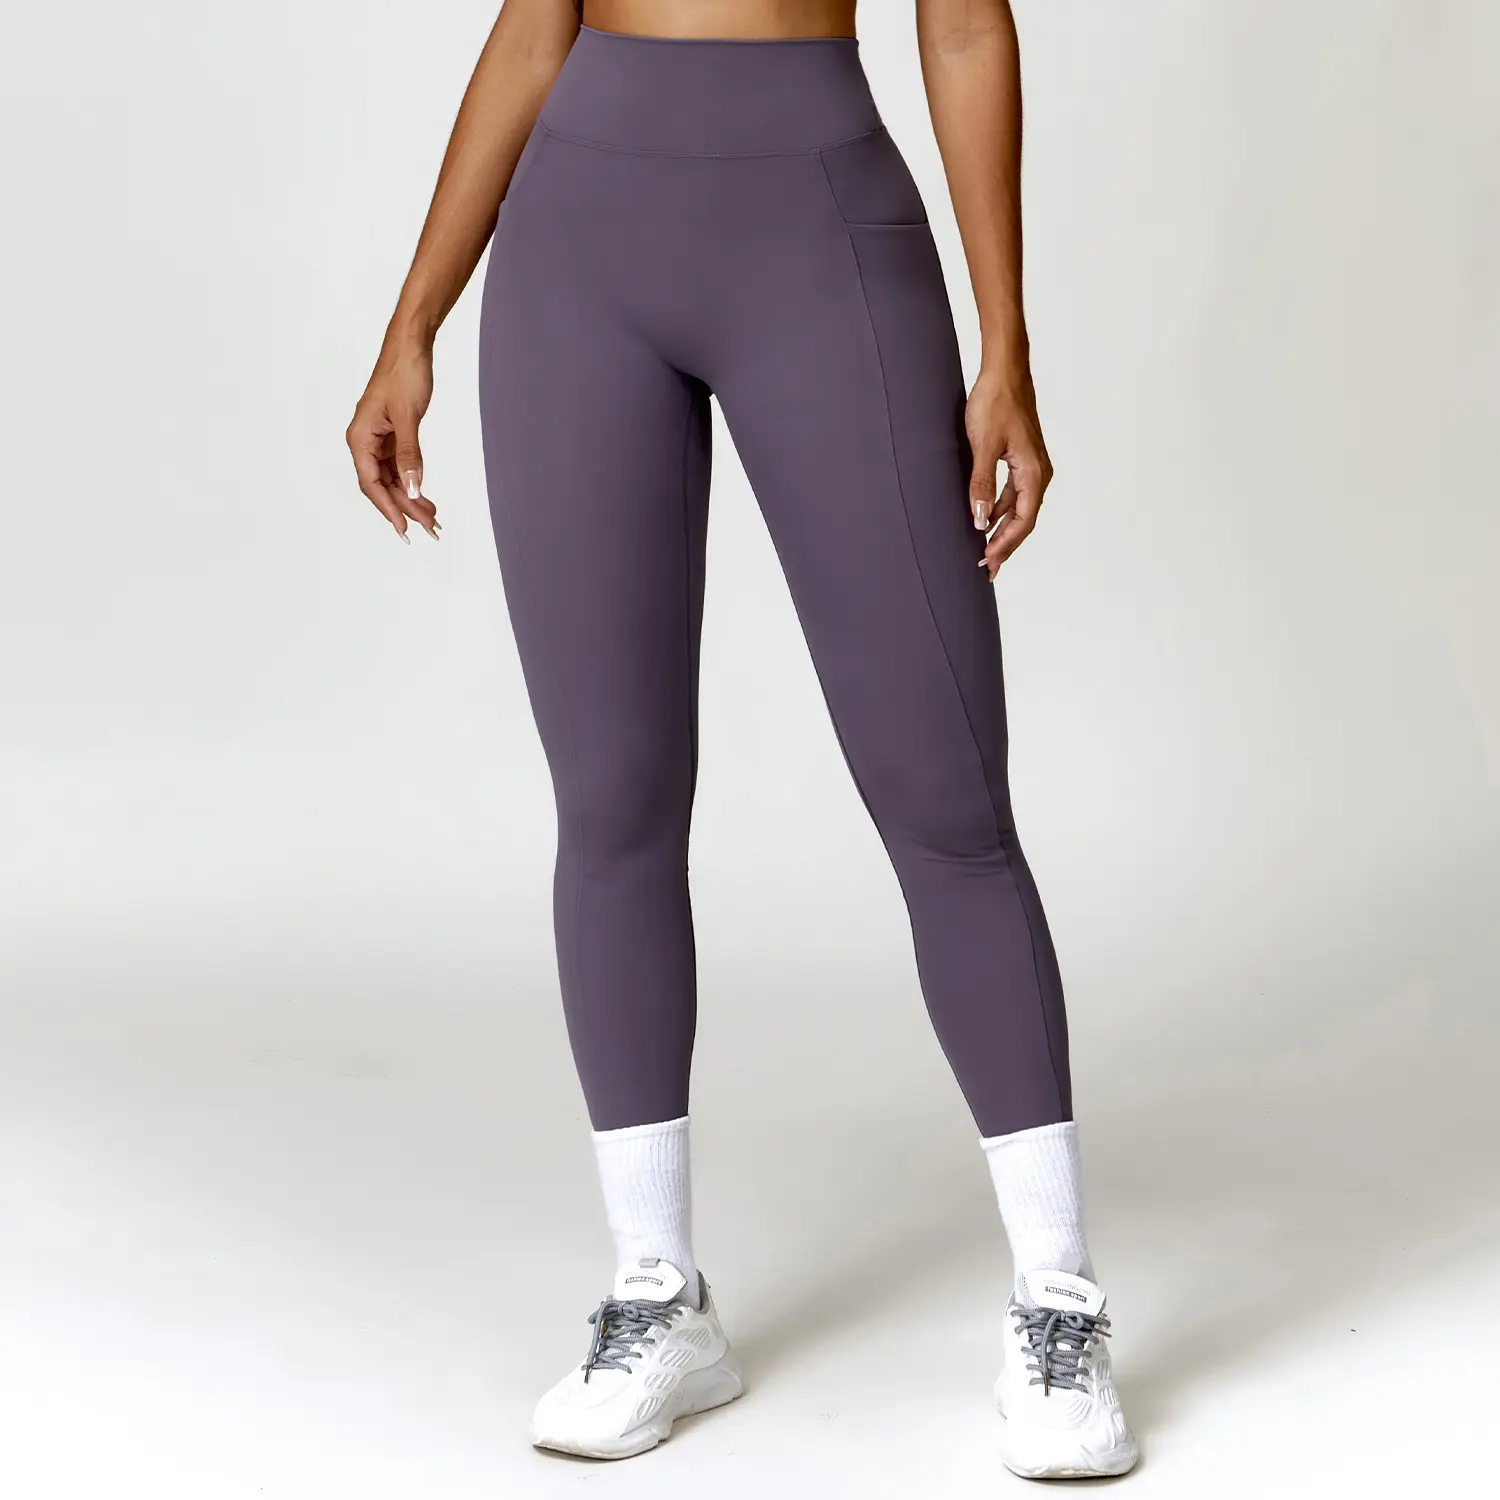 PASUXI Custom abbigliamento donna Leggings Fitness Gym Seamless Yoga Set allenamento stretto a vita alta abbigliamento attivo abbigliamento sportivo